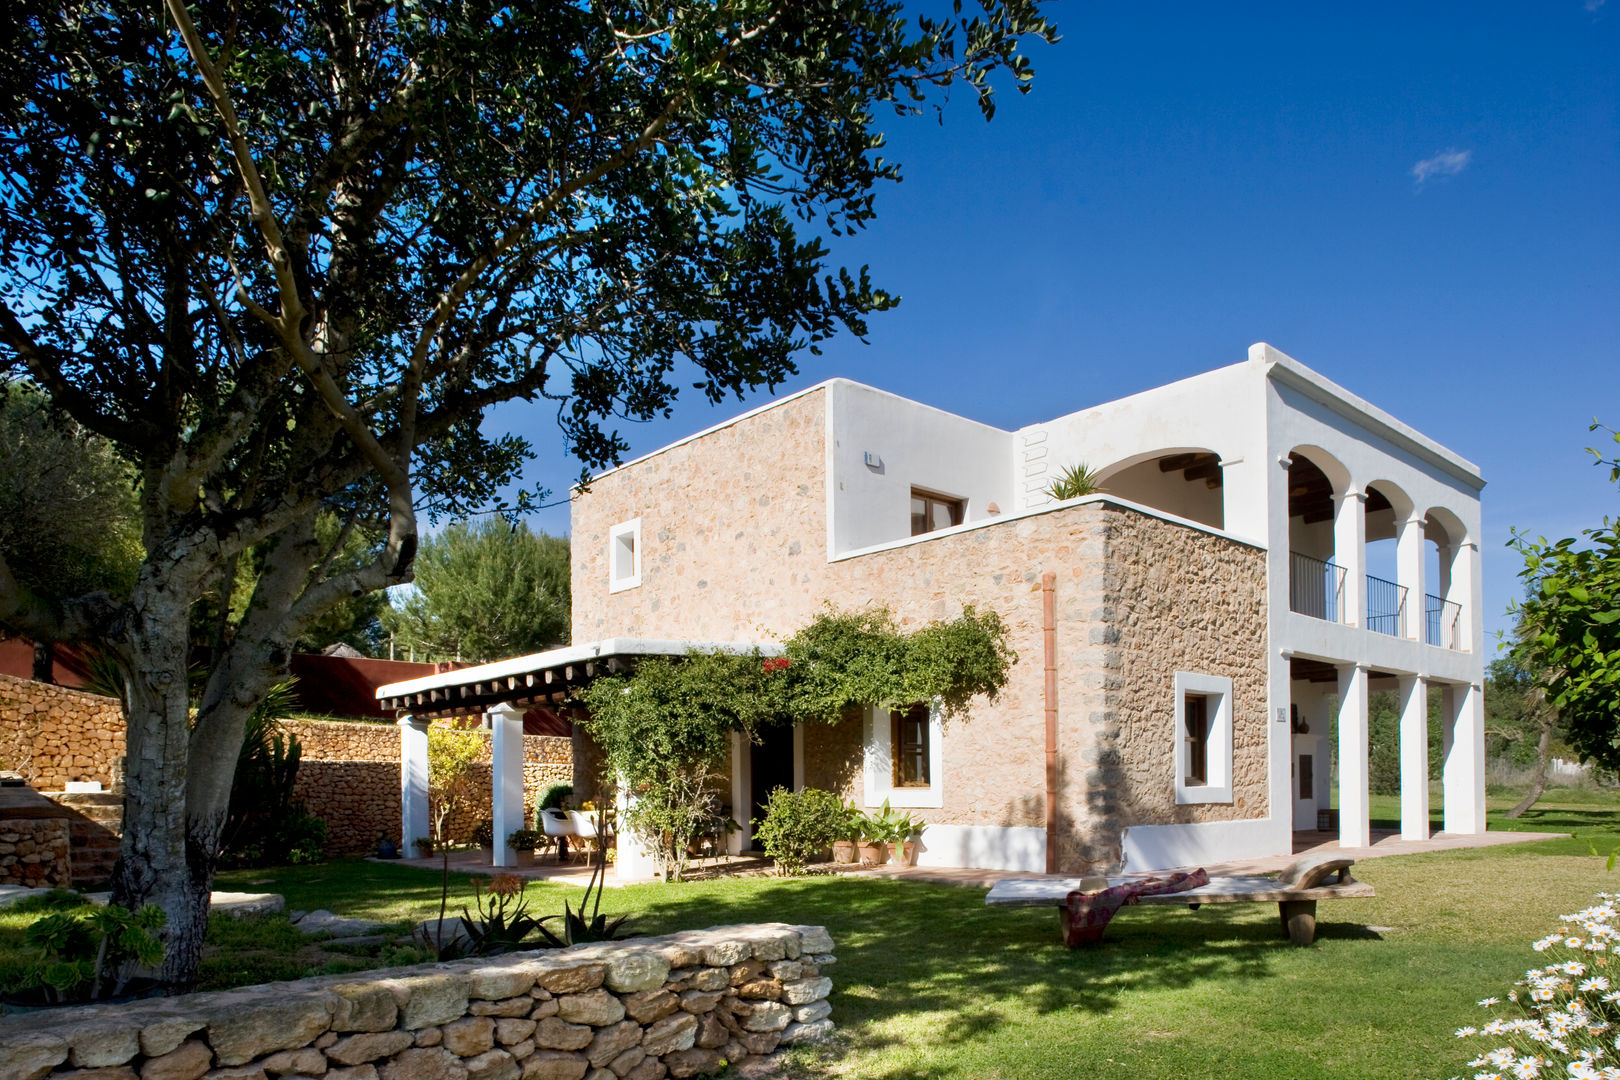 Casa en Ibiza, recdi8 recdi8 منازل